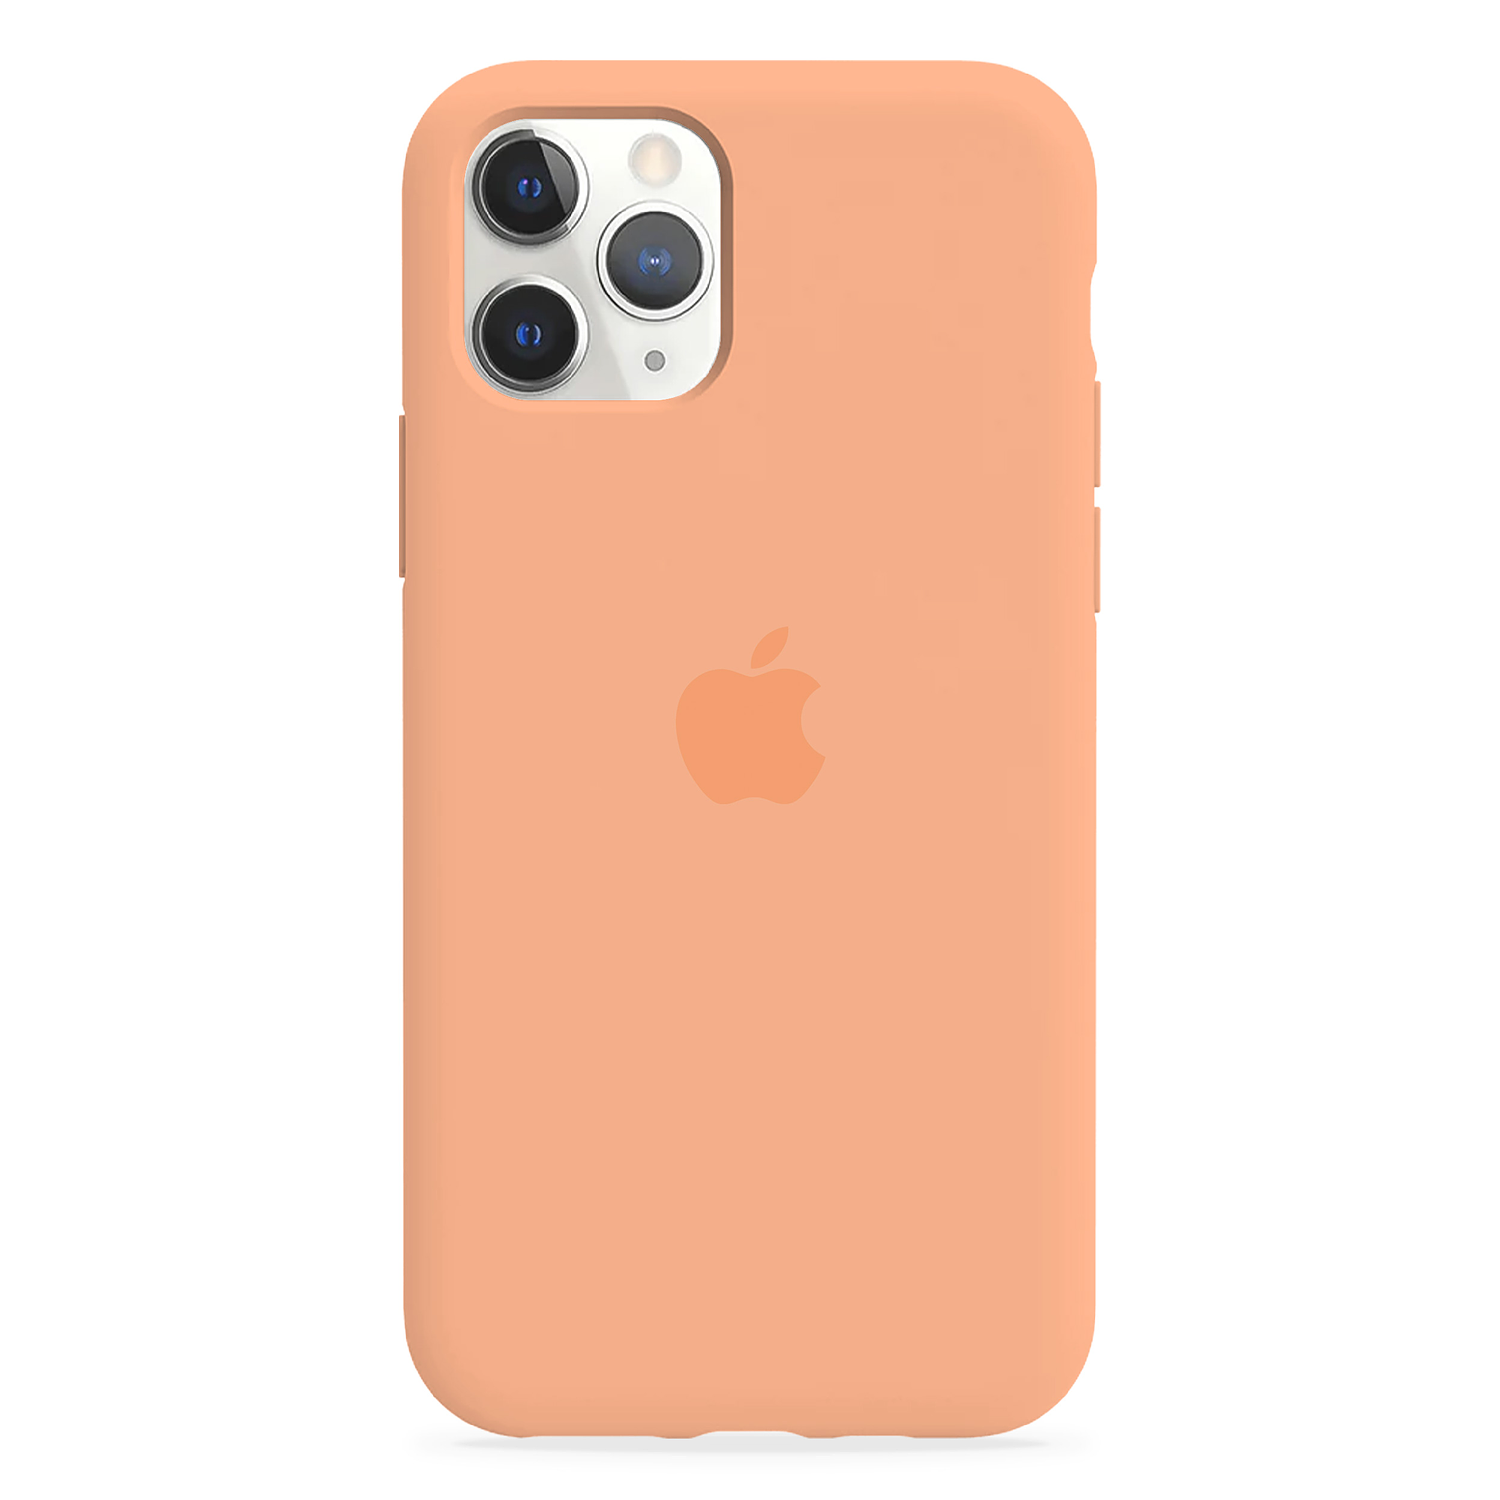 Carcasa de Silicona - iPhone 11 Pro Max 4